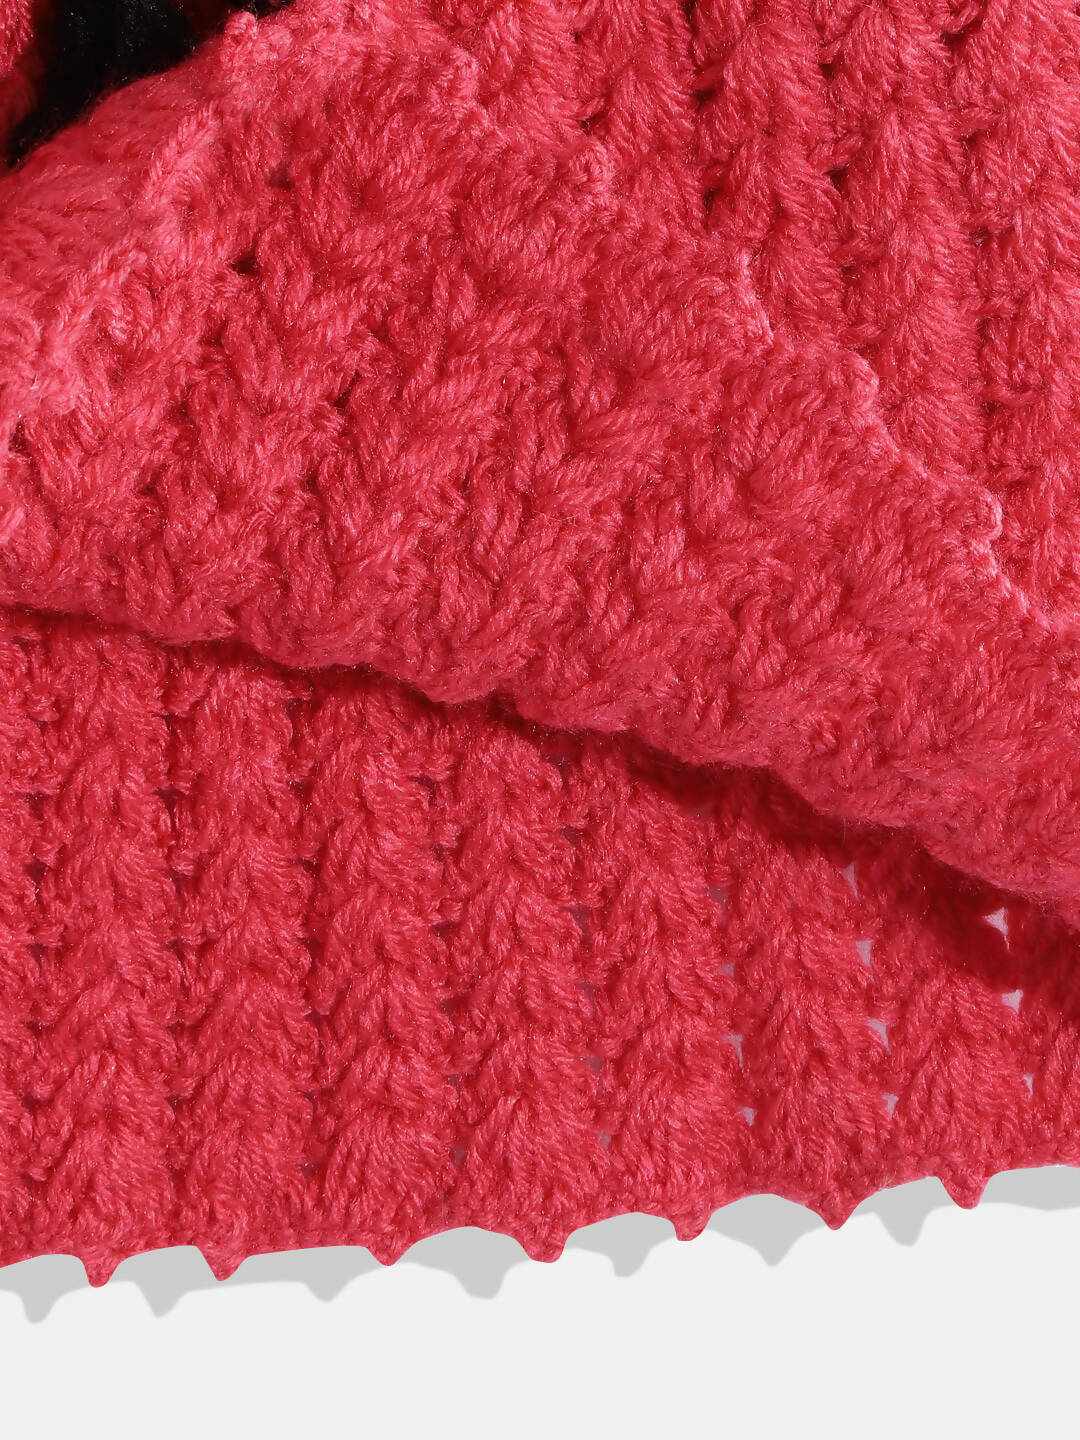 ChutPut Hand knitted Crochet Wool Queen Dress - Pink - Distacart